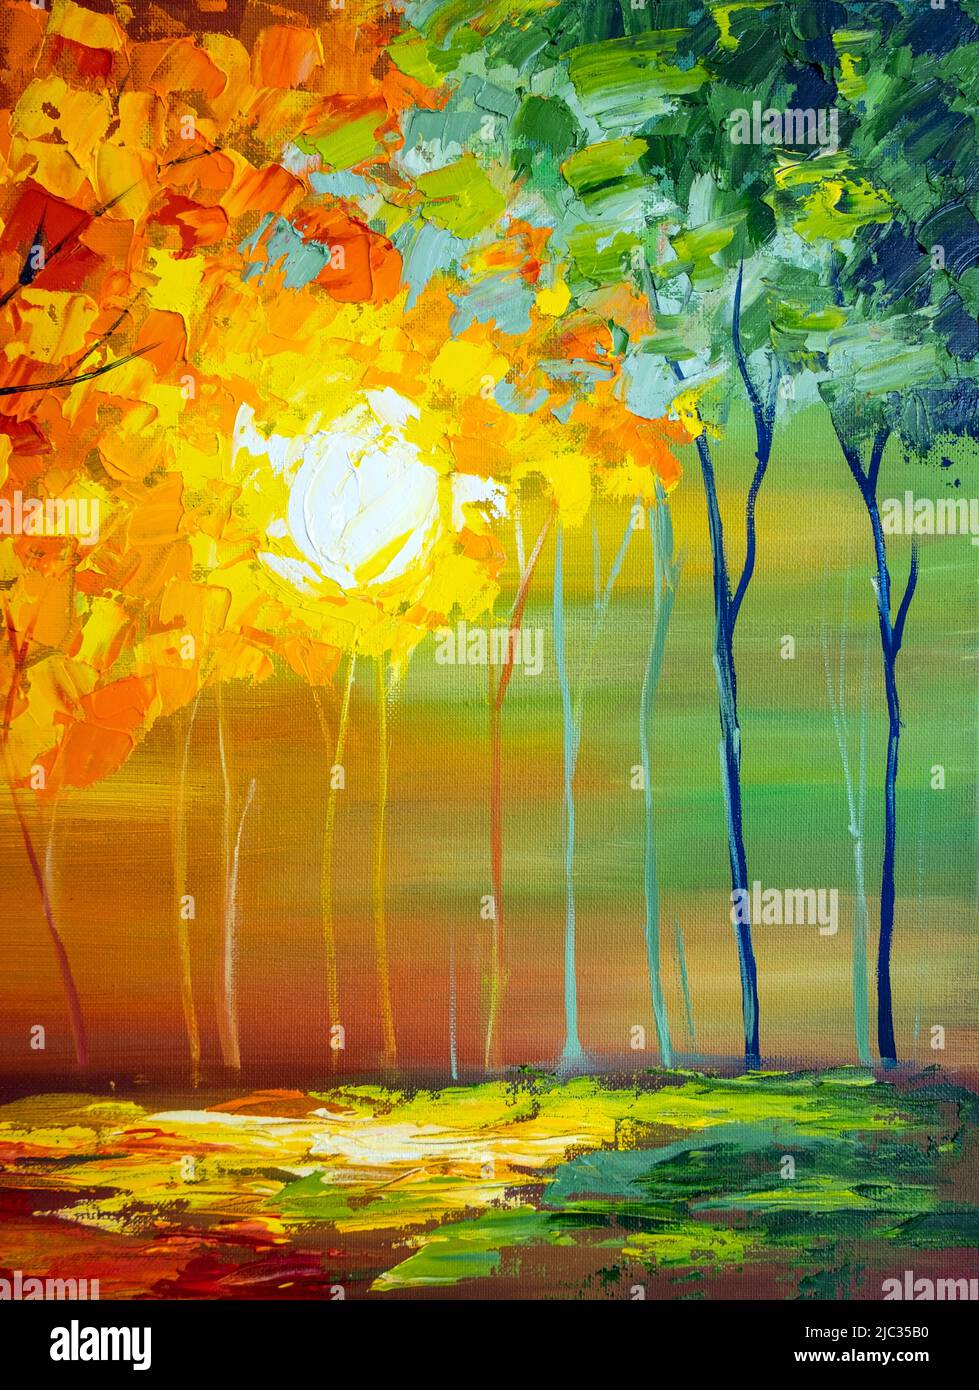 Abstrait coloré huile peinture paysage sur toile. Arbre à feuilles vert, violet et rouge avec ciel bleu. Printemps, été, automne saisons nature fond. Banque D'Images